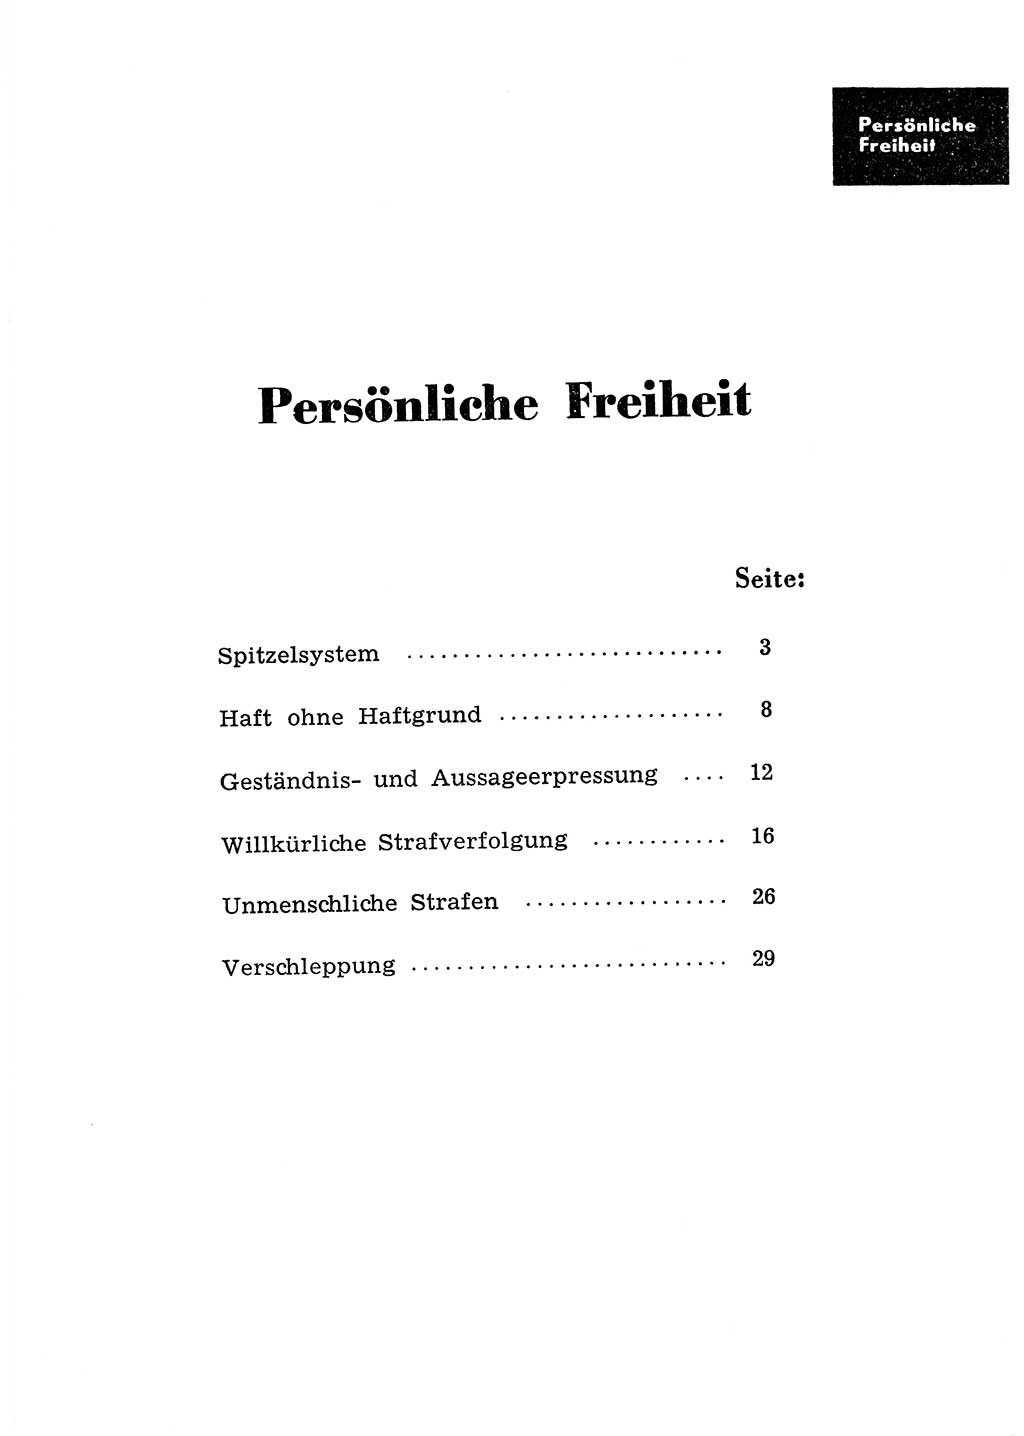 Katalog des Unrechts, Untersuchungsausschuß Freiheitlicher Juristen (UfJ) [Bundesrepublik Deutschland (BRD)] 1956, Seite 1 (Kat. UnR. UfJ BRD 1956, S. 1)